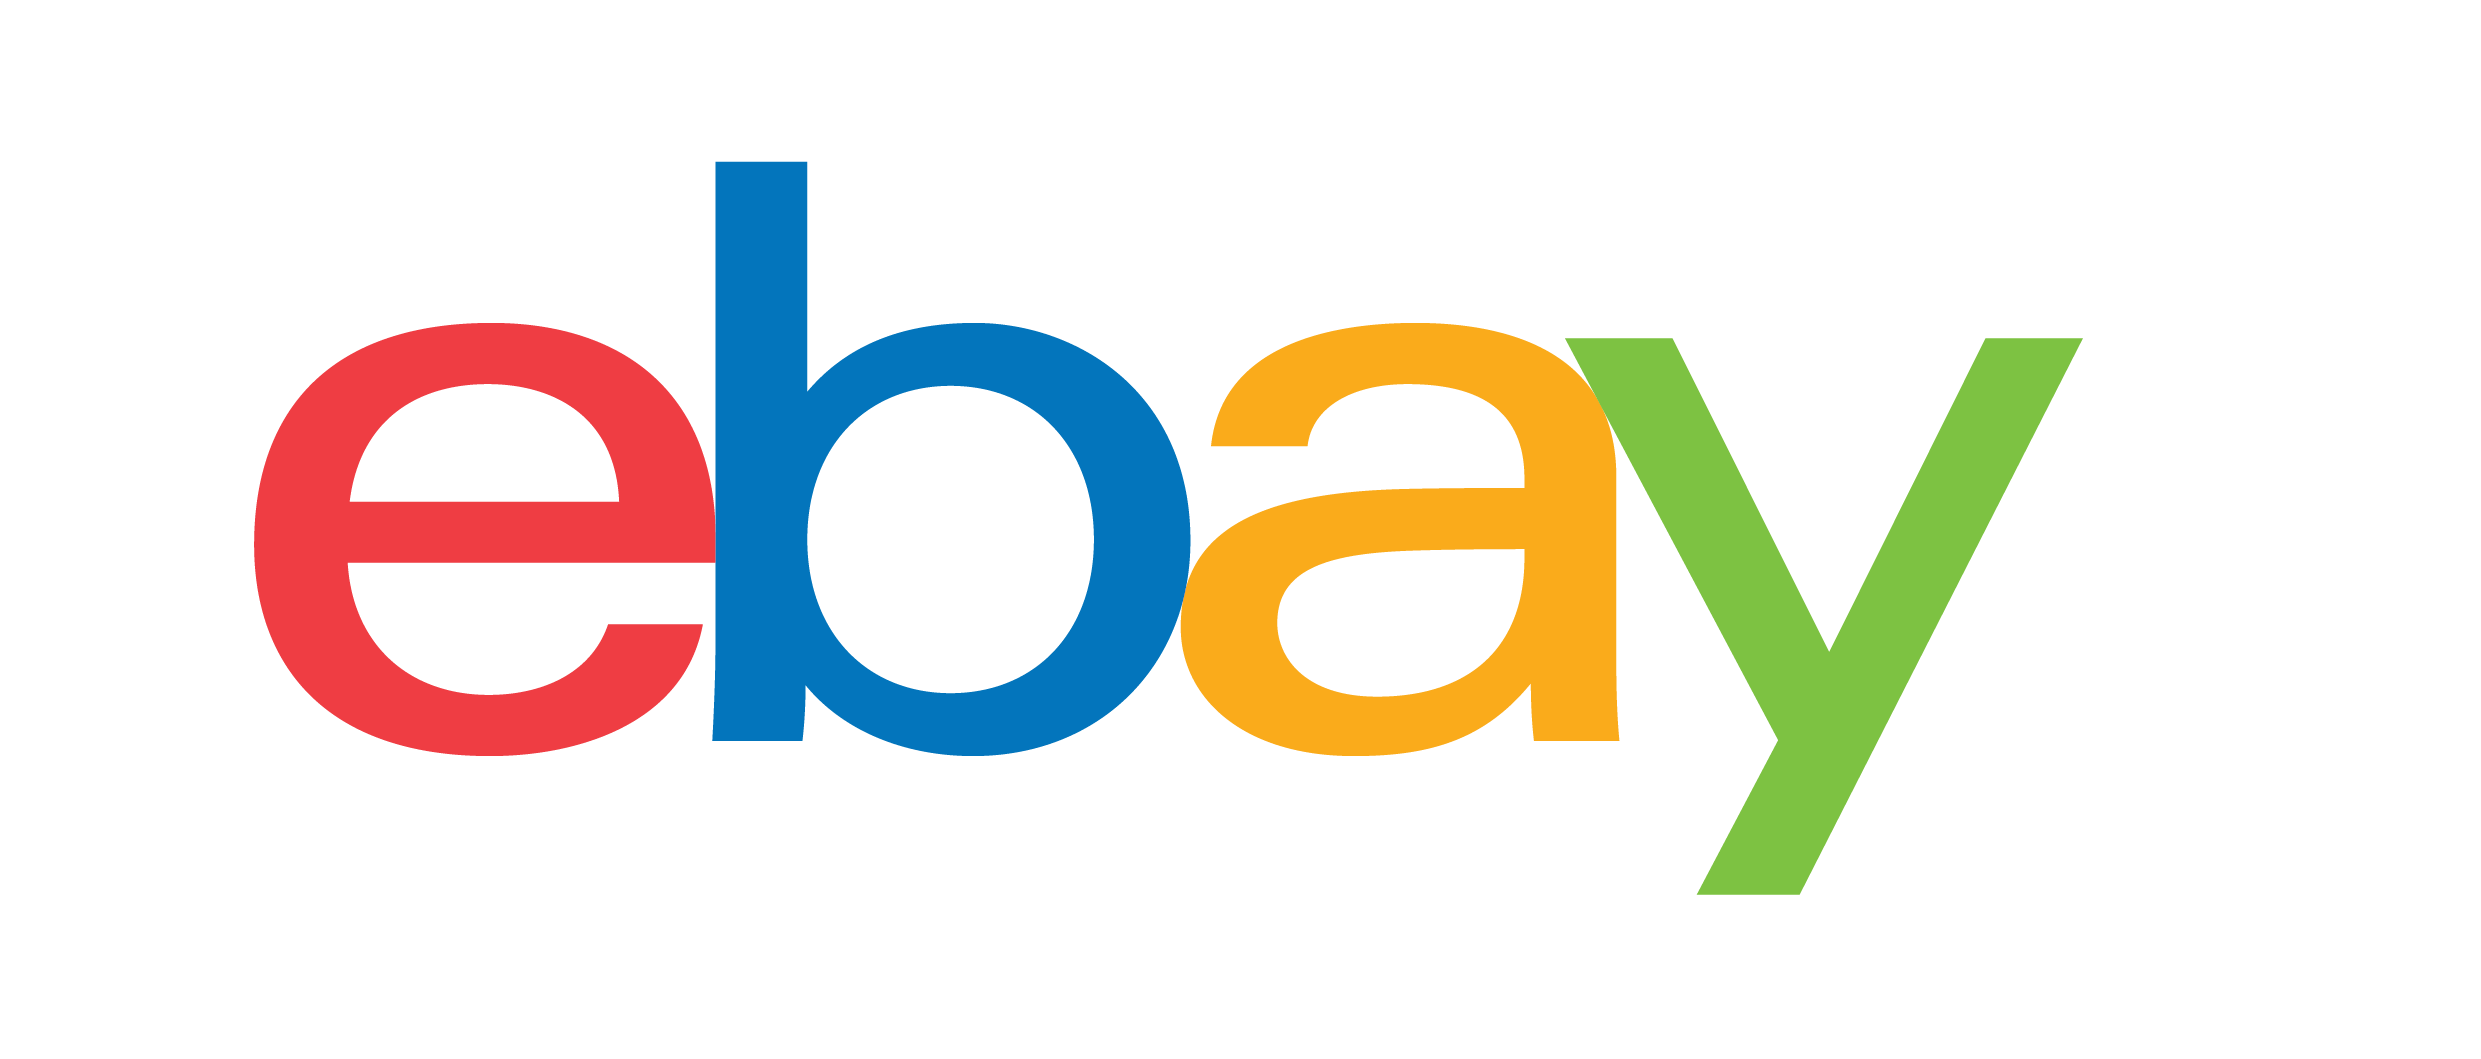 eBay का लोगो.